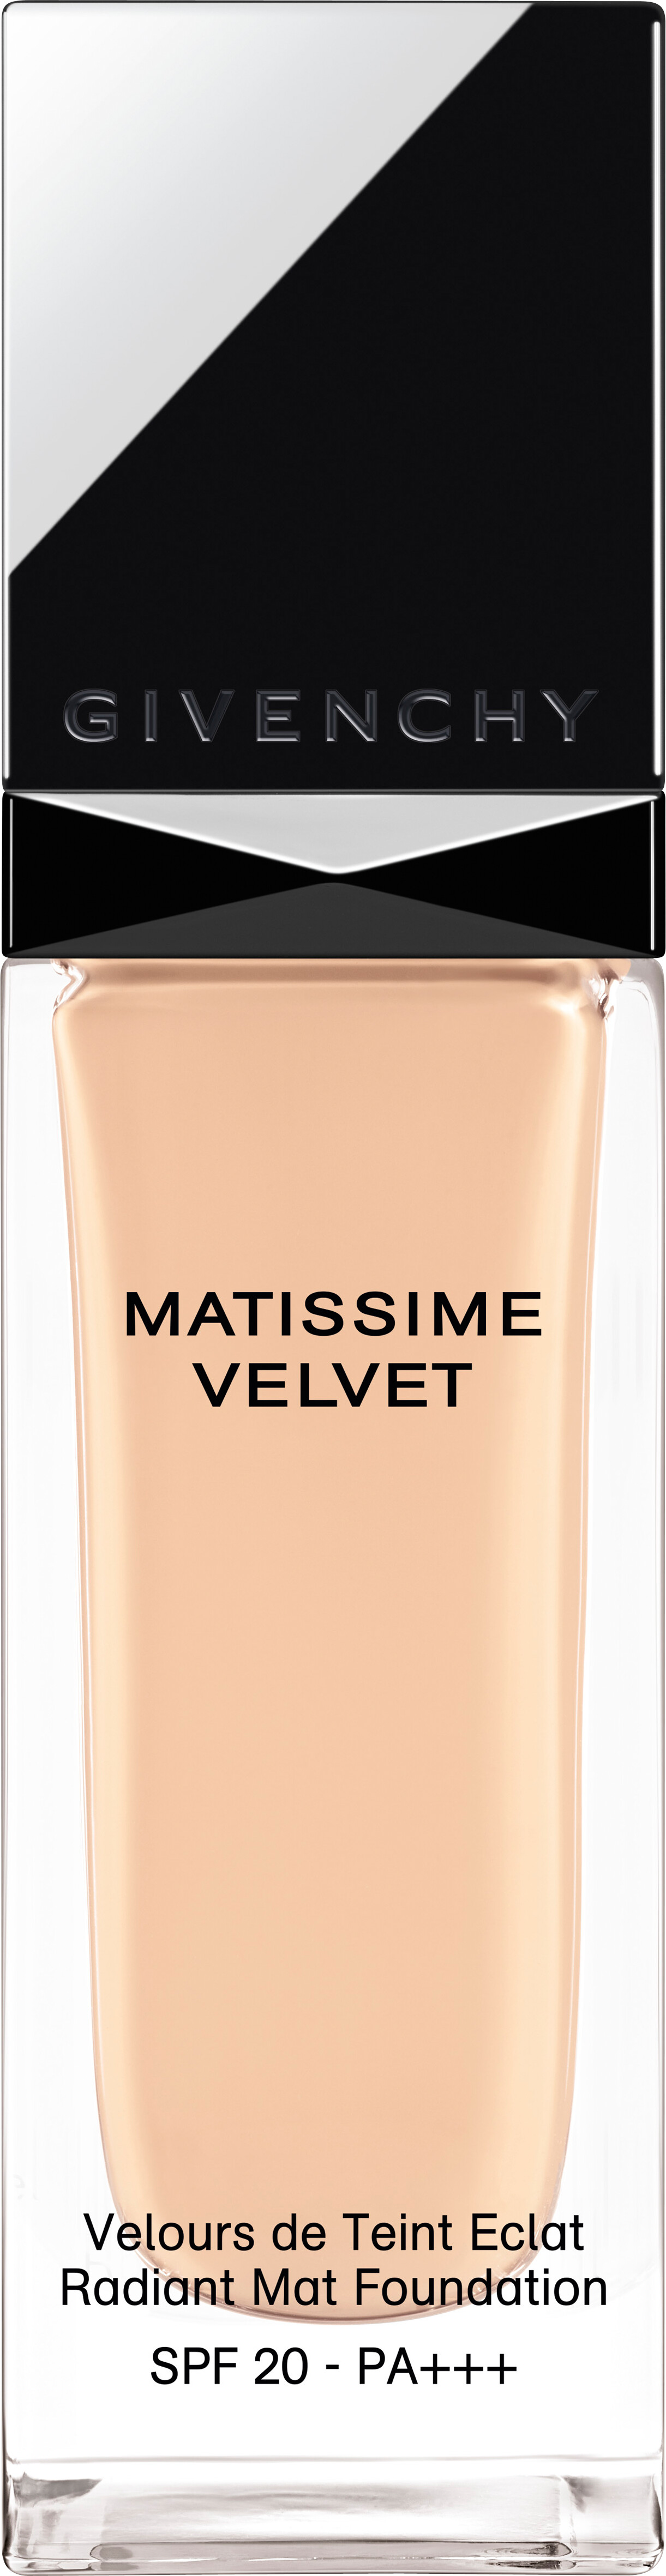 GIVENCHY Matissime Velvet Fluid Foundation SPF20 30ml 01 - Mat Porcelain